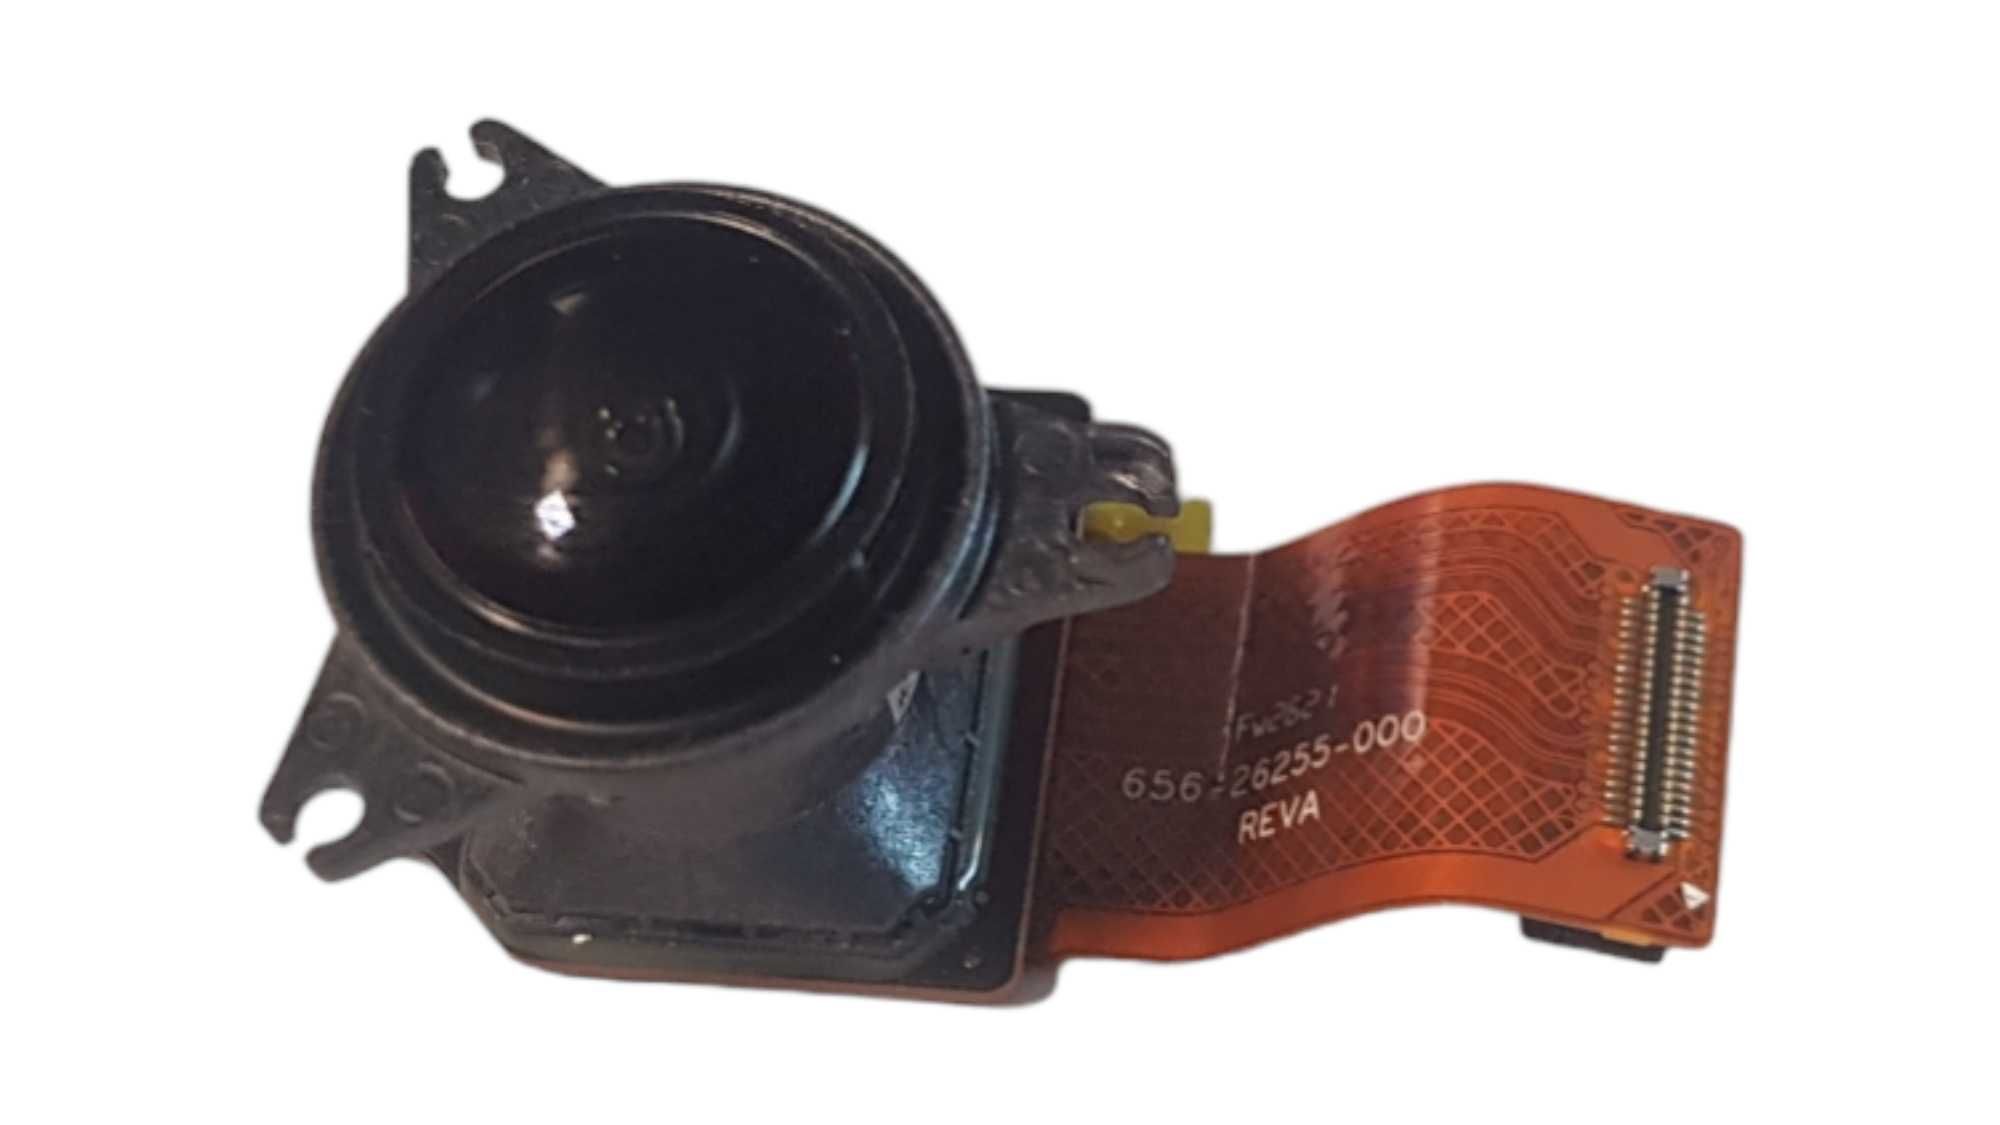 Oryginalny Obiektyw z sensorem do kamery sportowej GoPro 8 Black